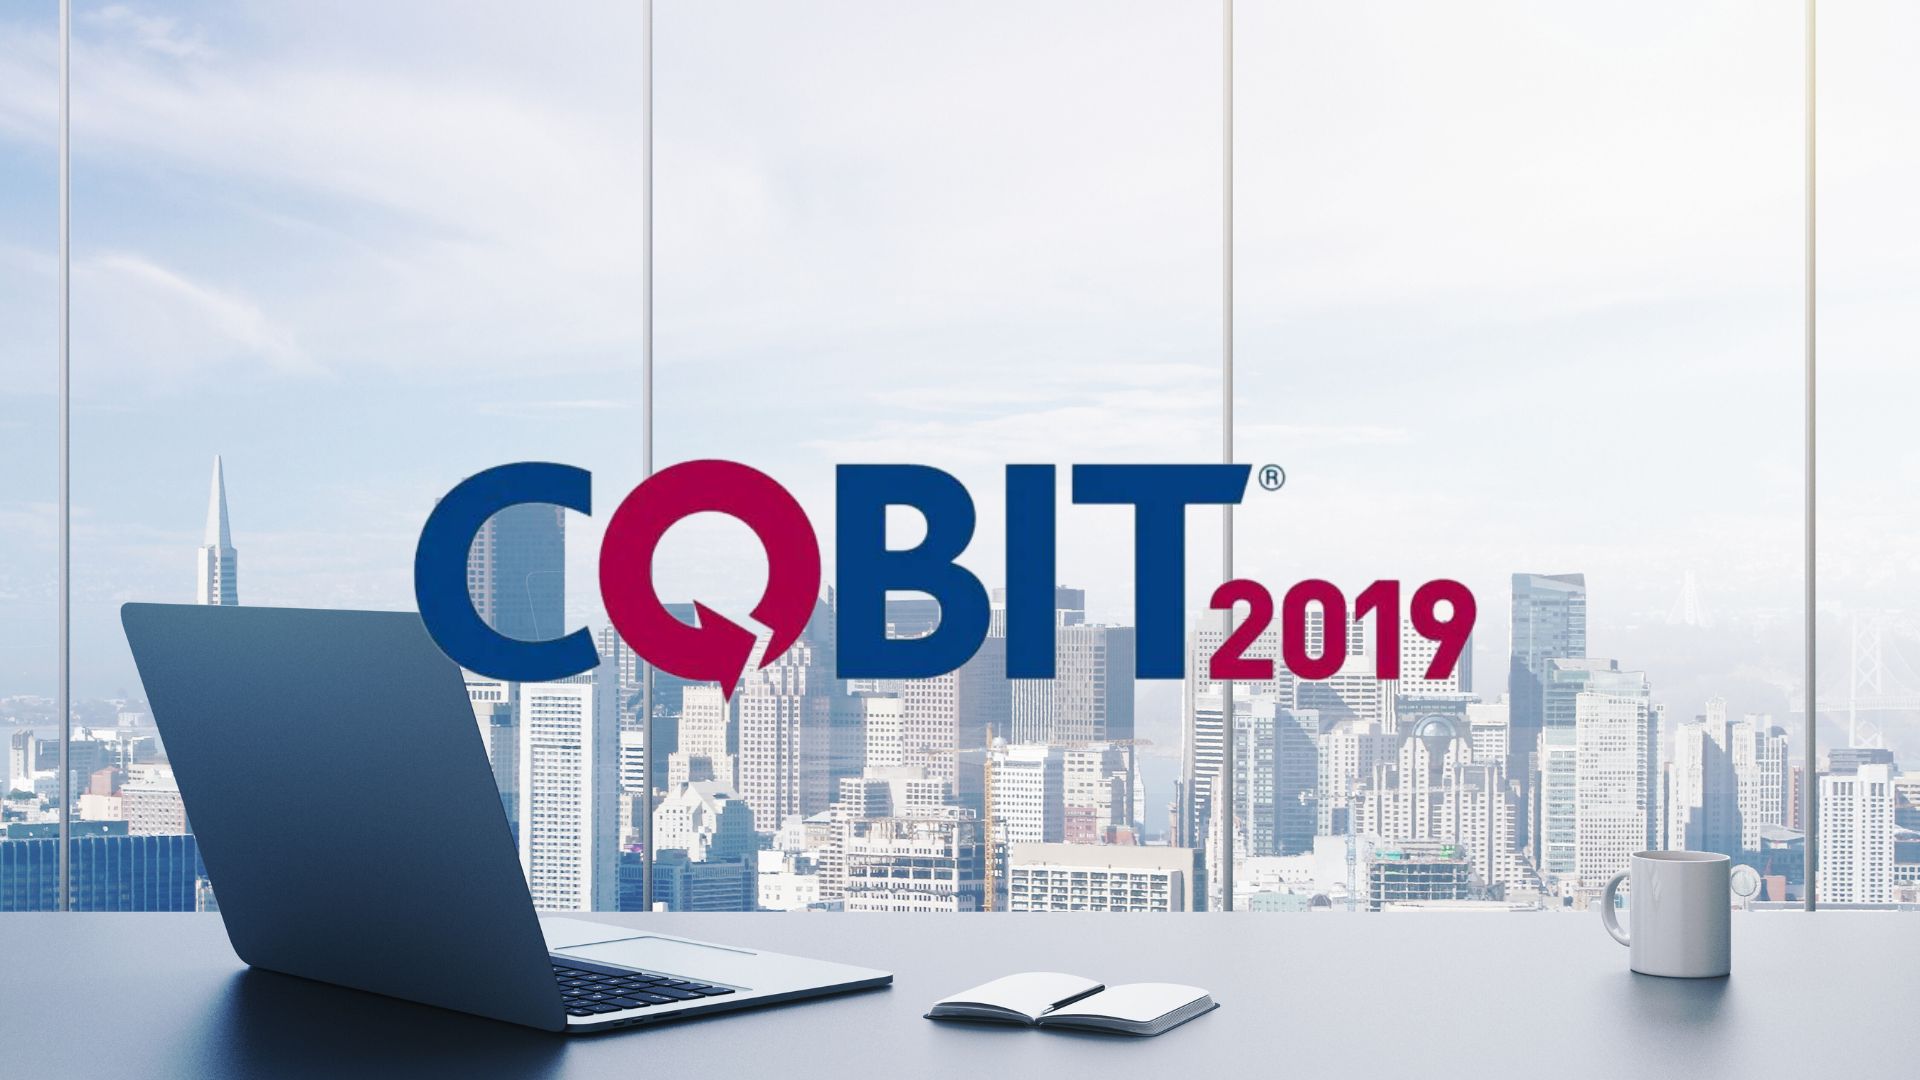 Ilustrasi COBIT 2019